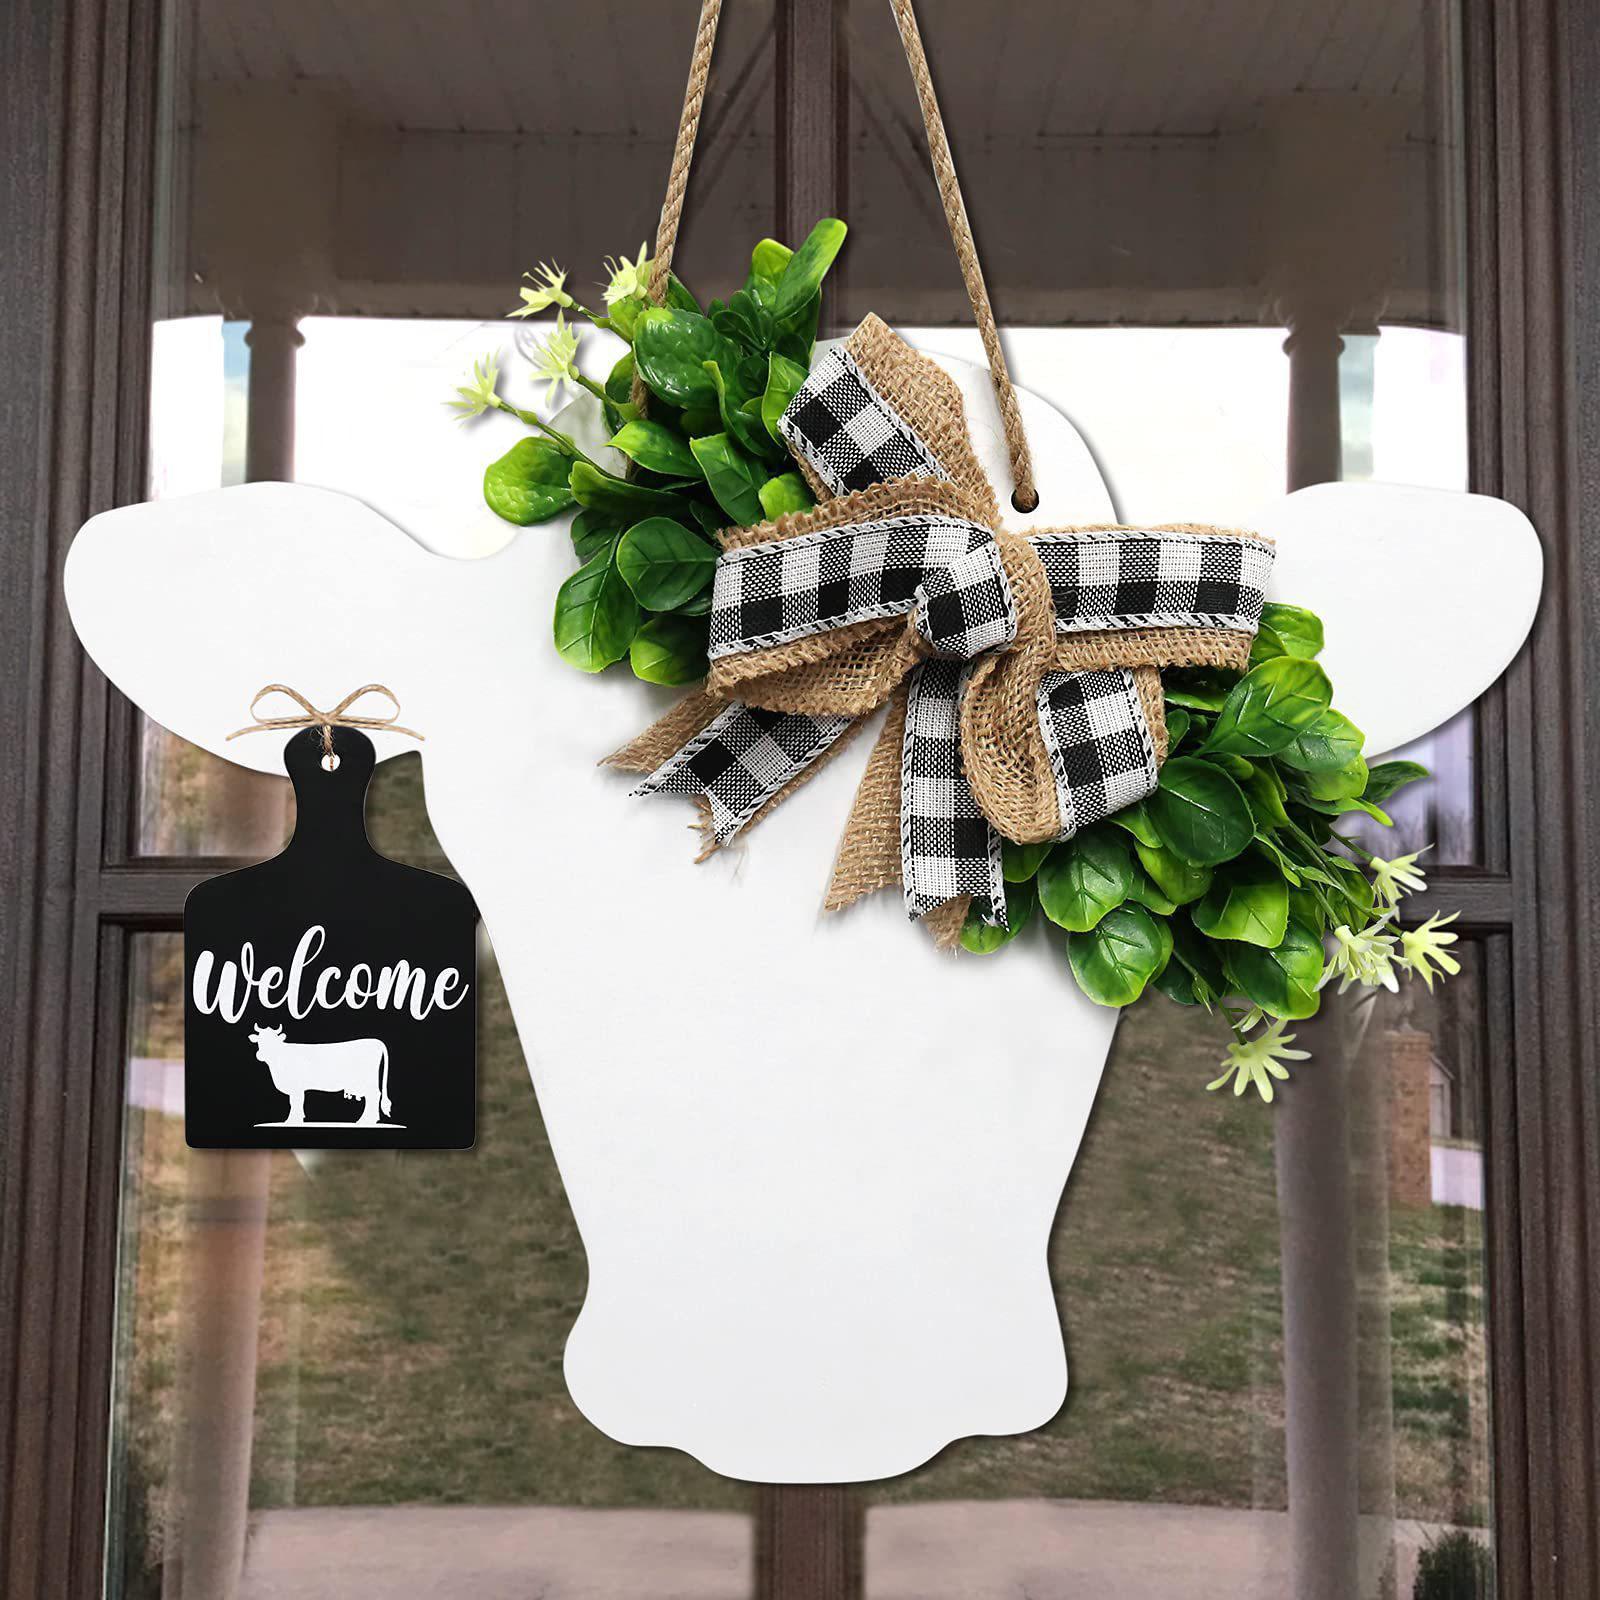 Cow Head Door Wreath Sign Hanging Welcome Sign for Indoor Ornaments Decor